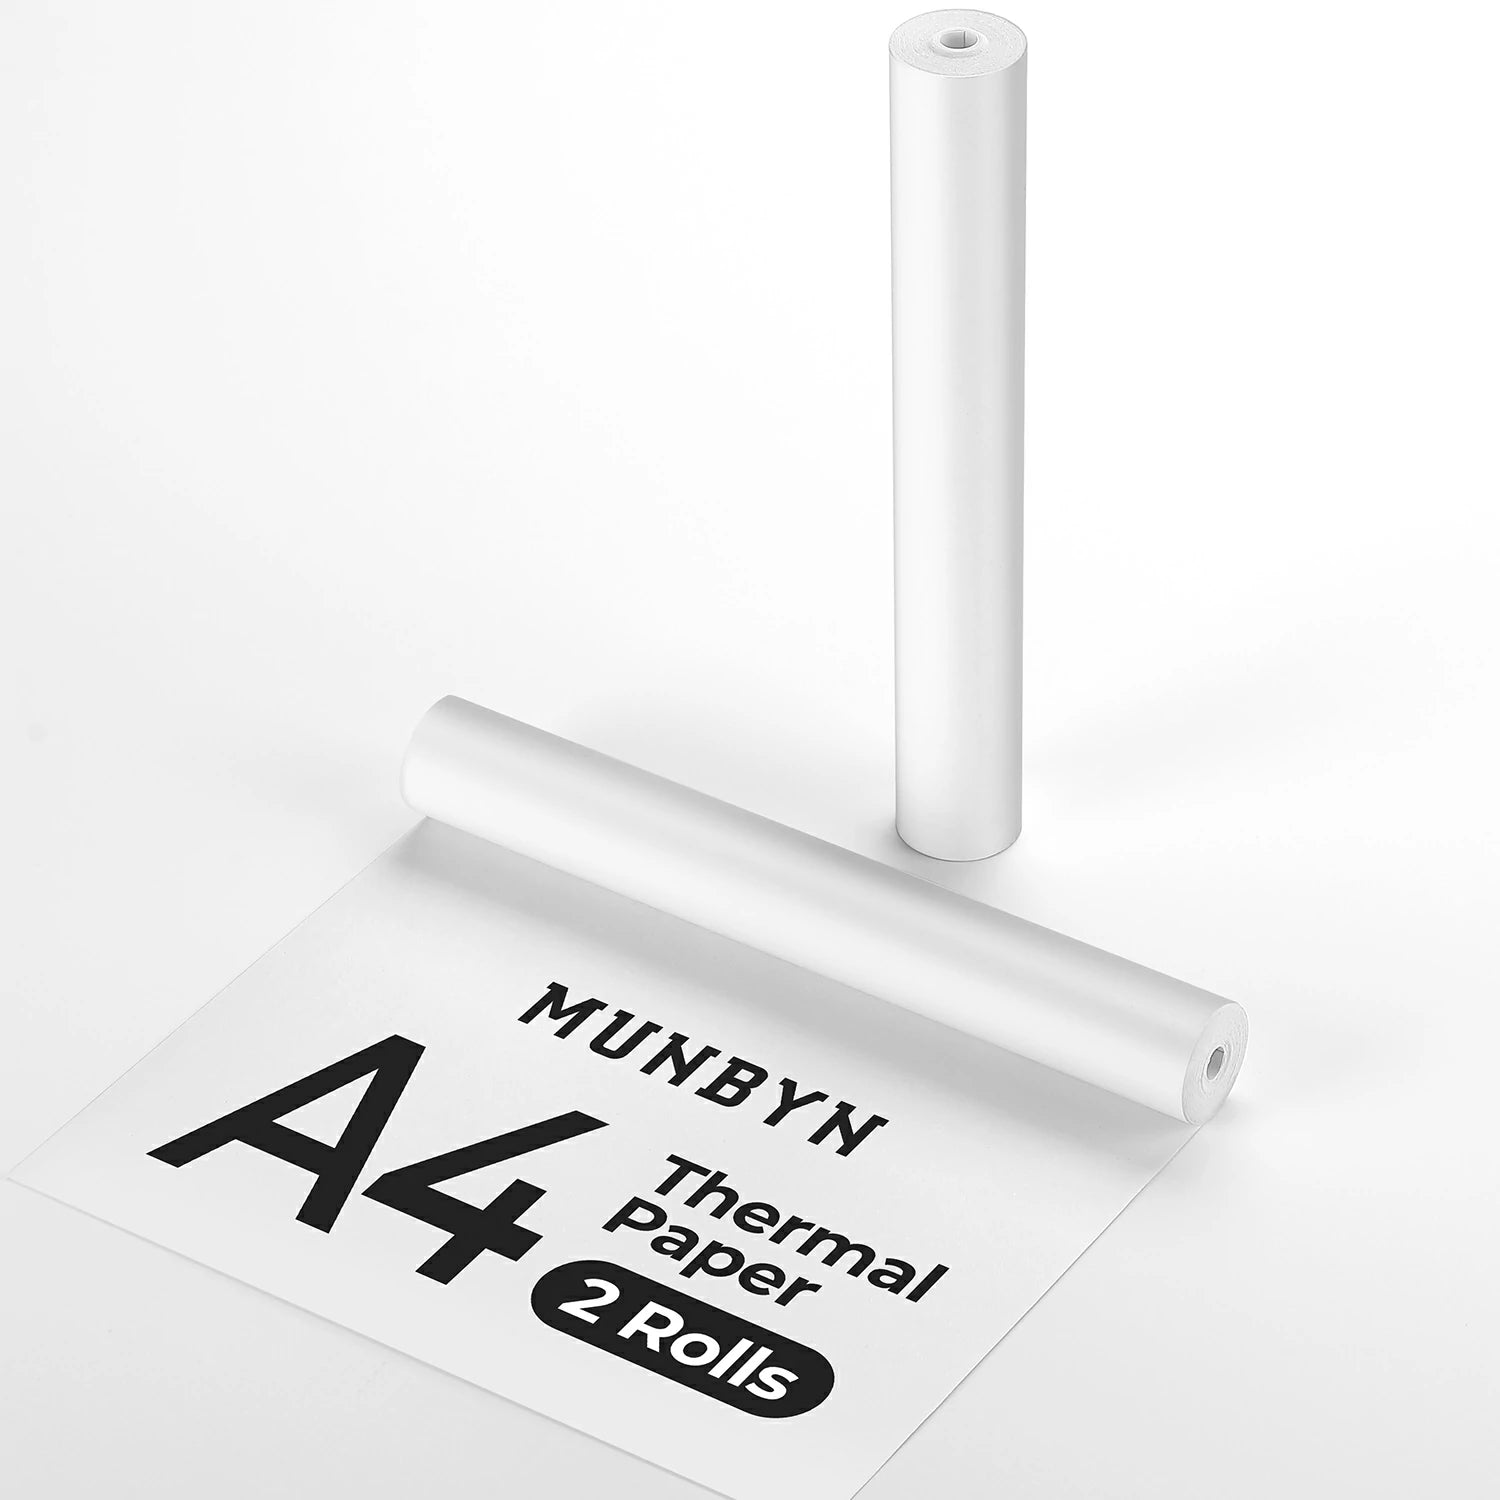 MUNBYN bietet A4-Thermopapier in Rollen und als Faltblätter an.